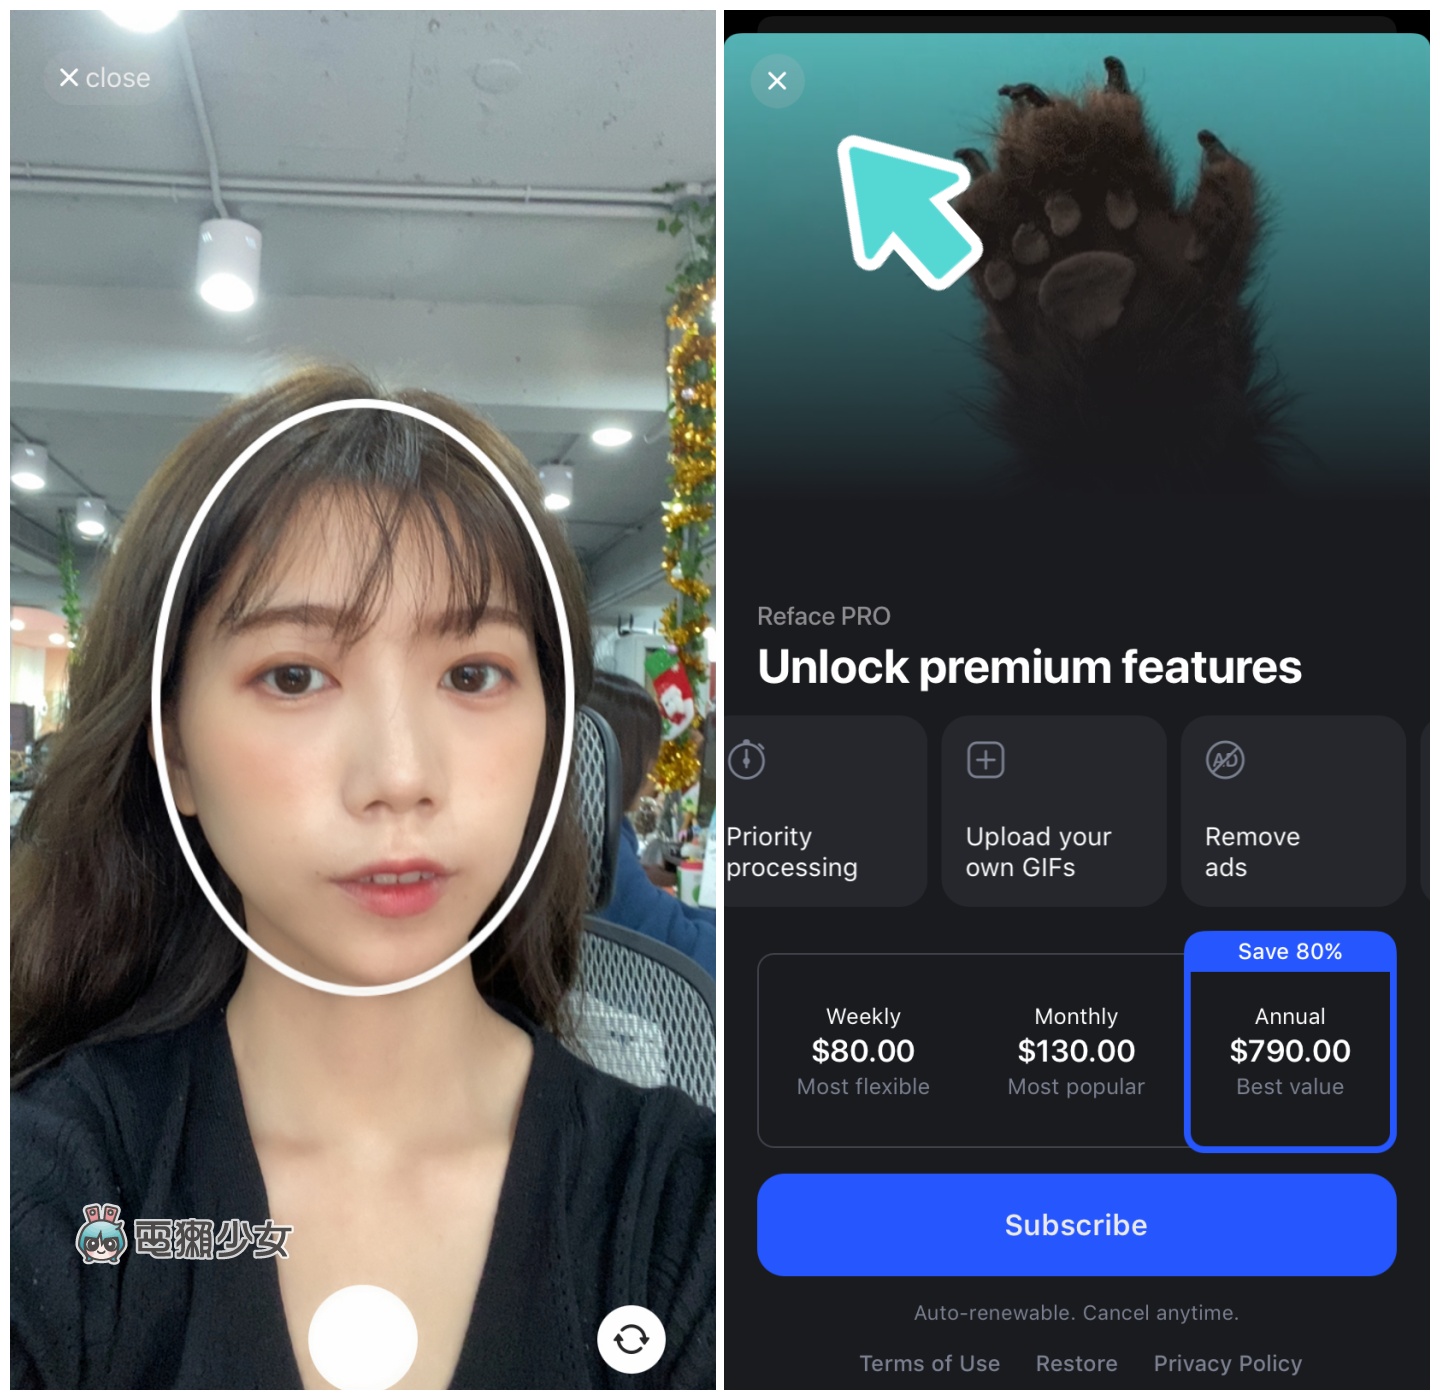 免費『 REFACE 』App 幫你 AI 換臉！看看自己變成明星是什麼樣子！